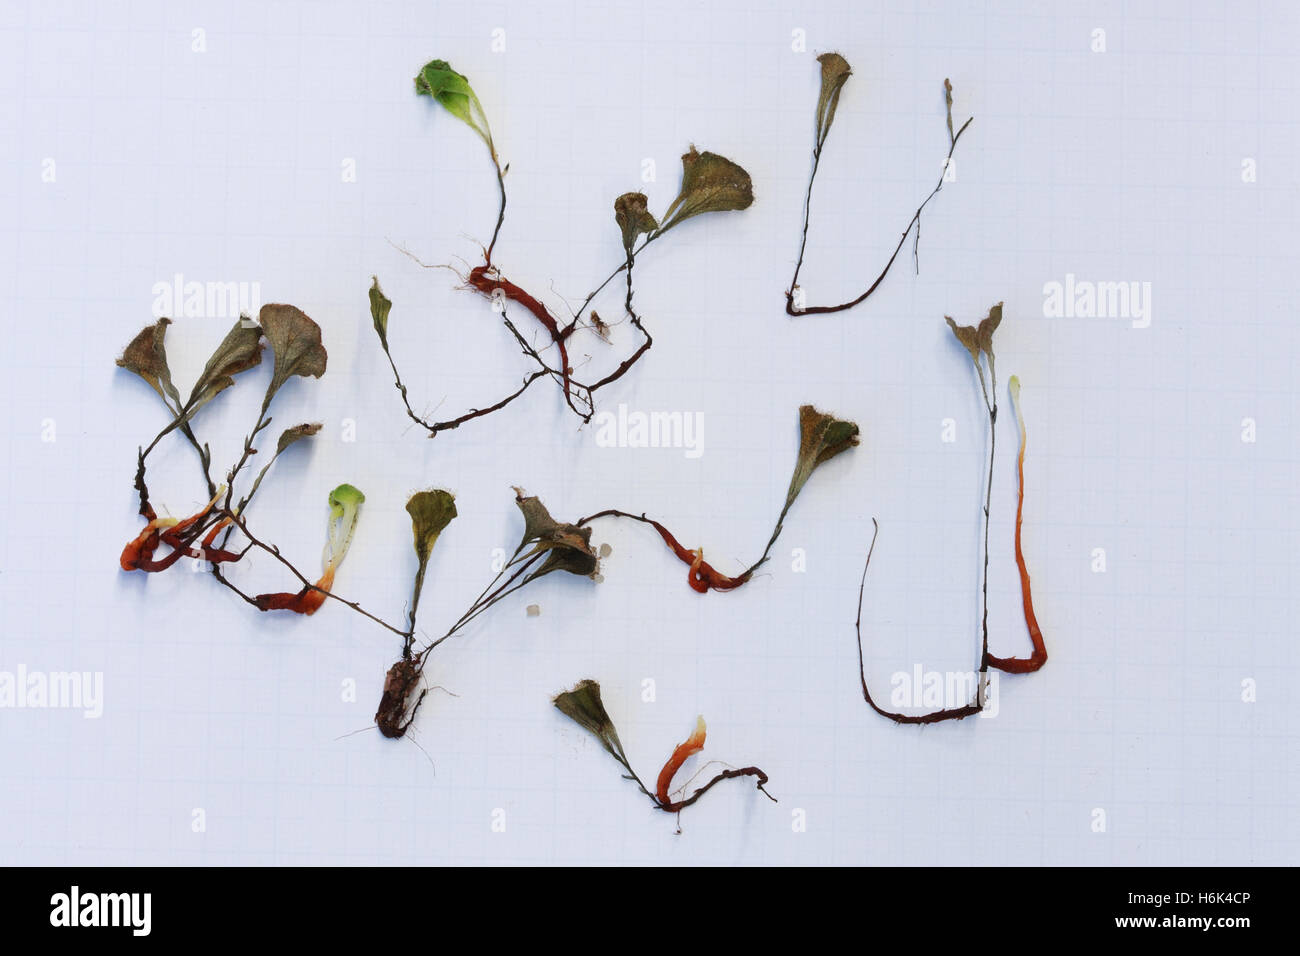 Drosera erythrorhiza, la droséra à l'encre rouge, est une espèce tubéreuse vivace dans la plante carnivore genre Drosera qui est endémique à l'ouest de l'Australie Banque D'Images